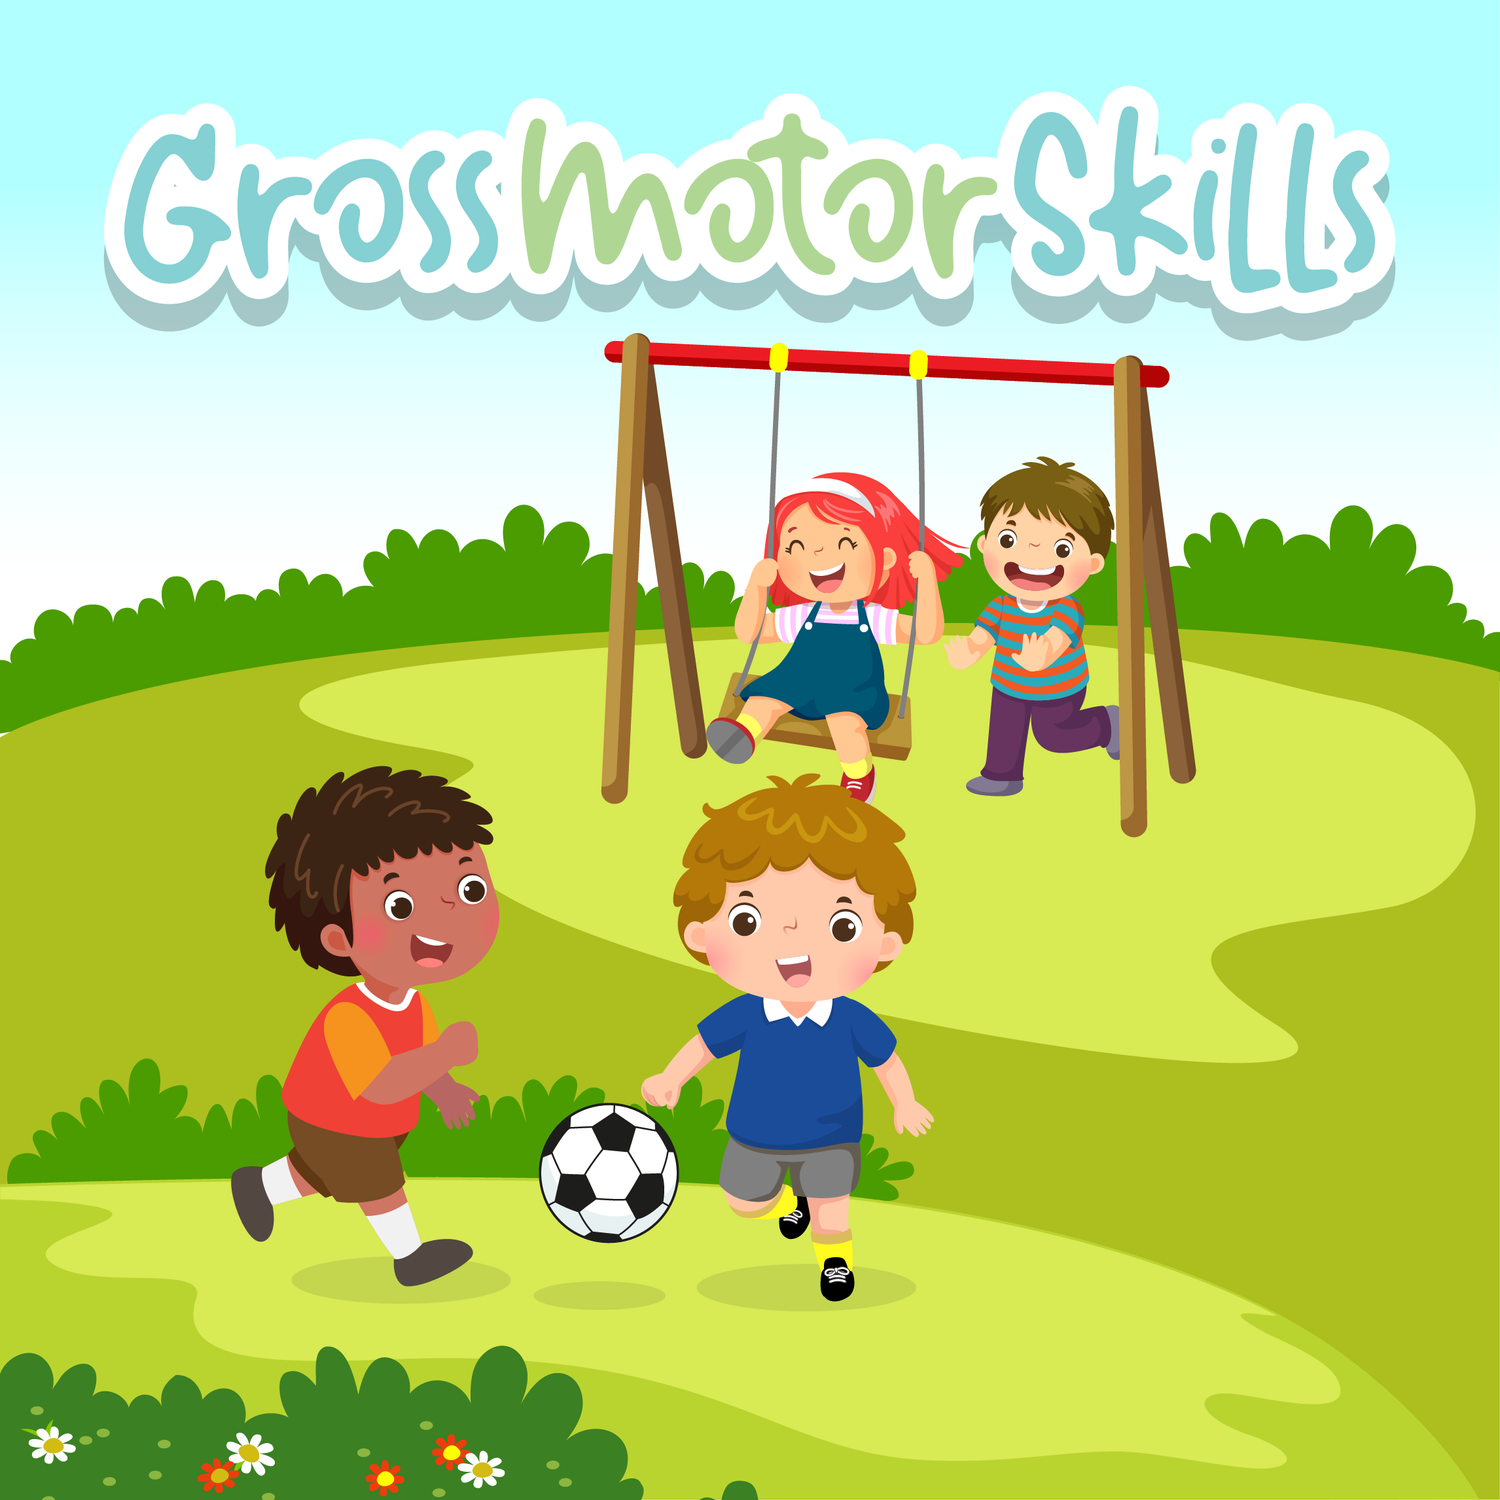 Gross motor skills: a child kicking a ball.